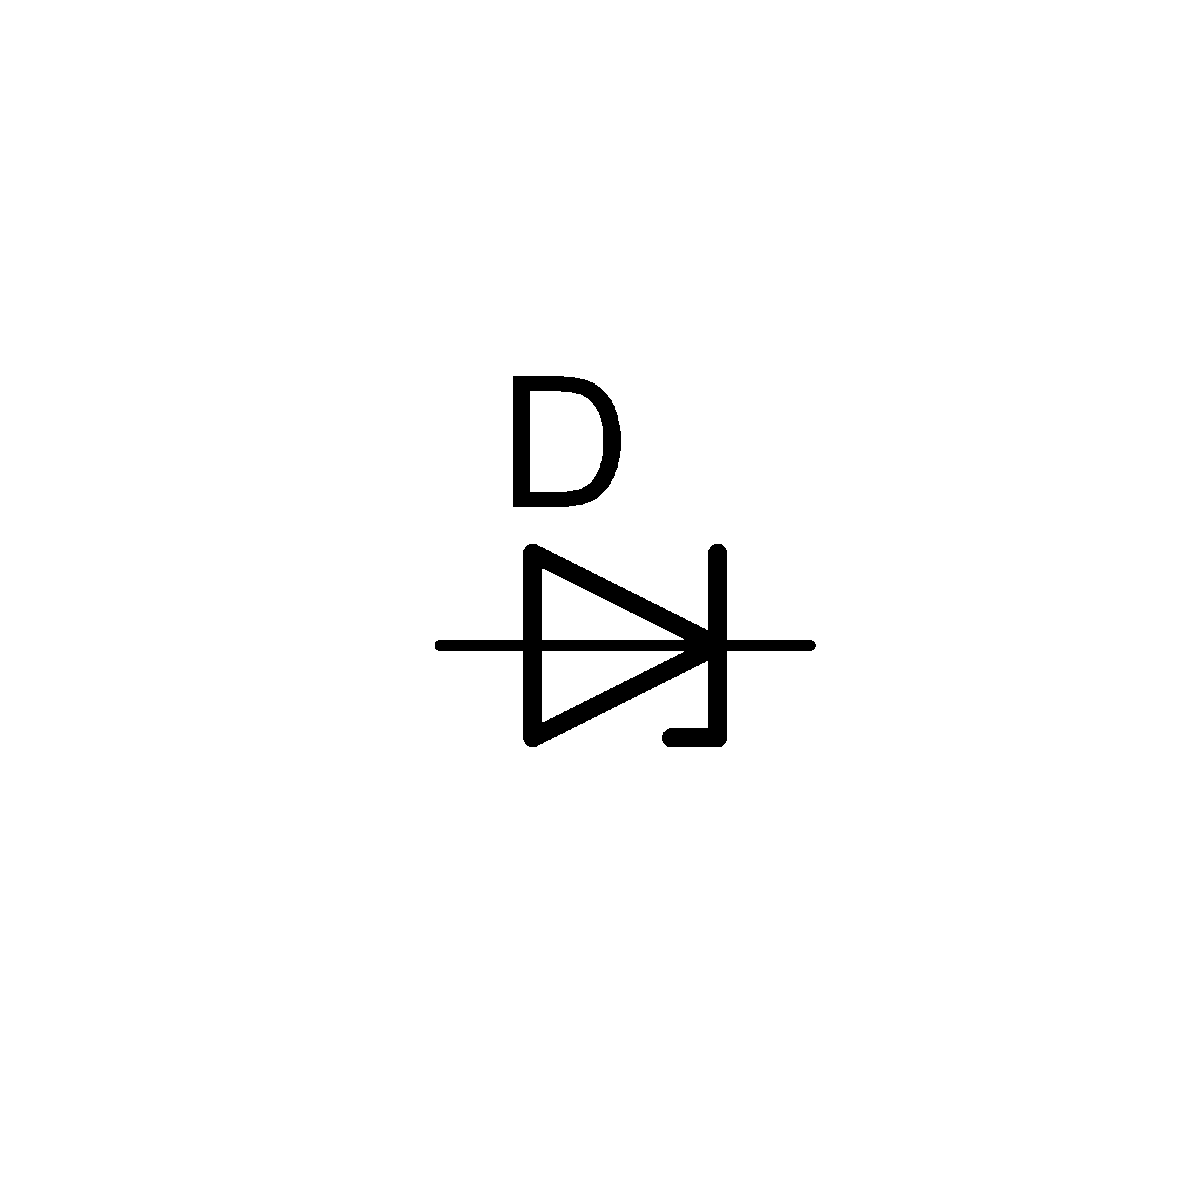 Schématická značka Zenerovy diody – CoJeCo.cz, CC BY 4.0